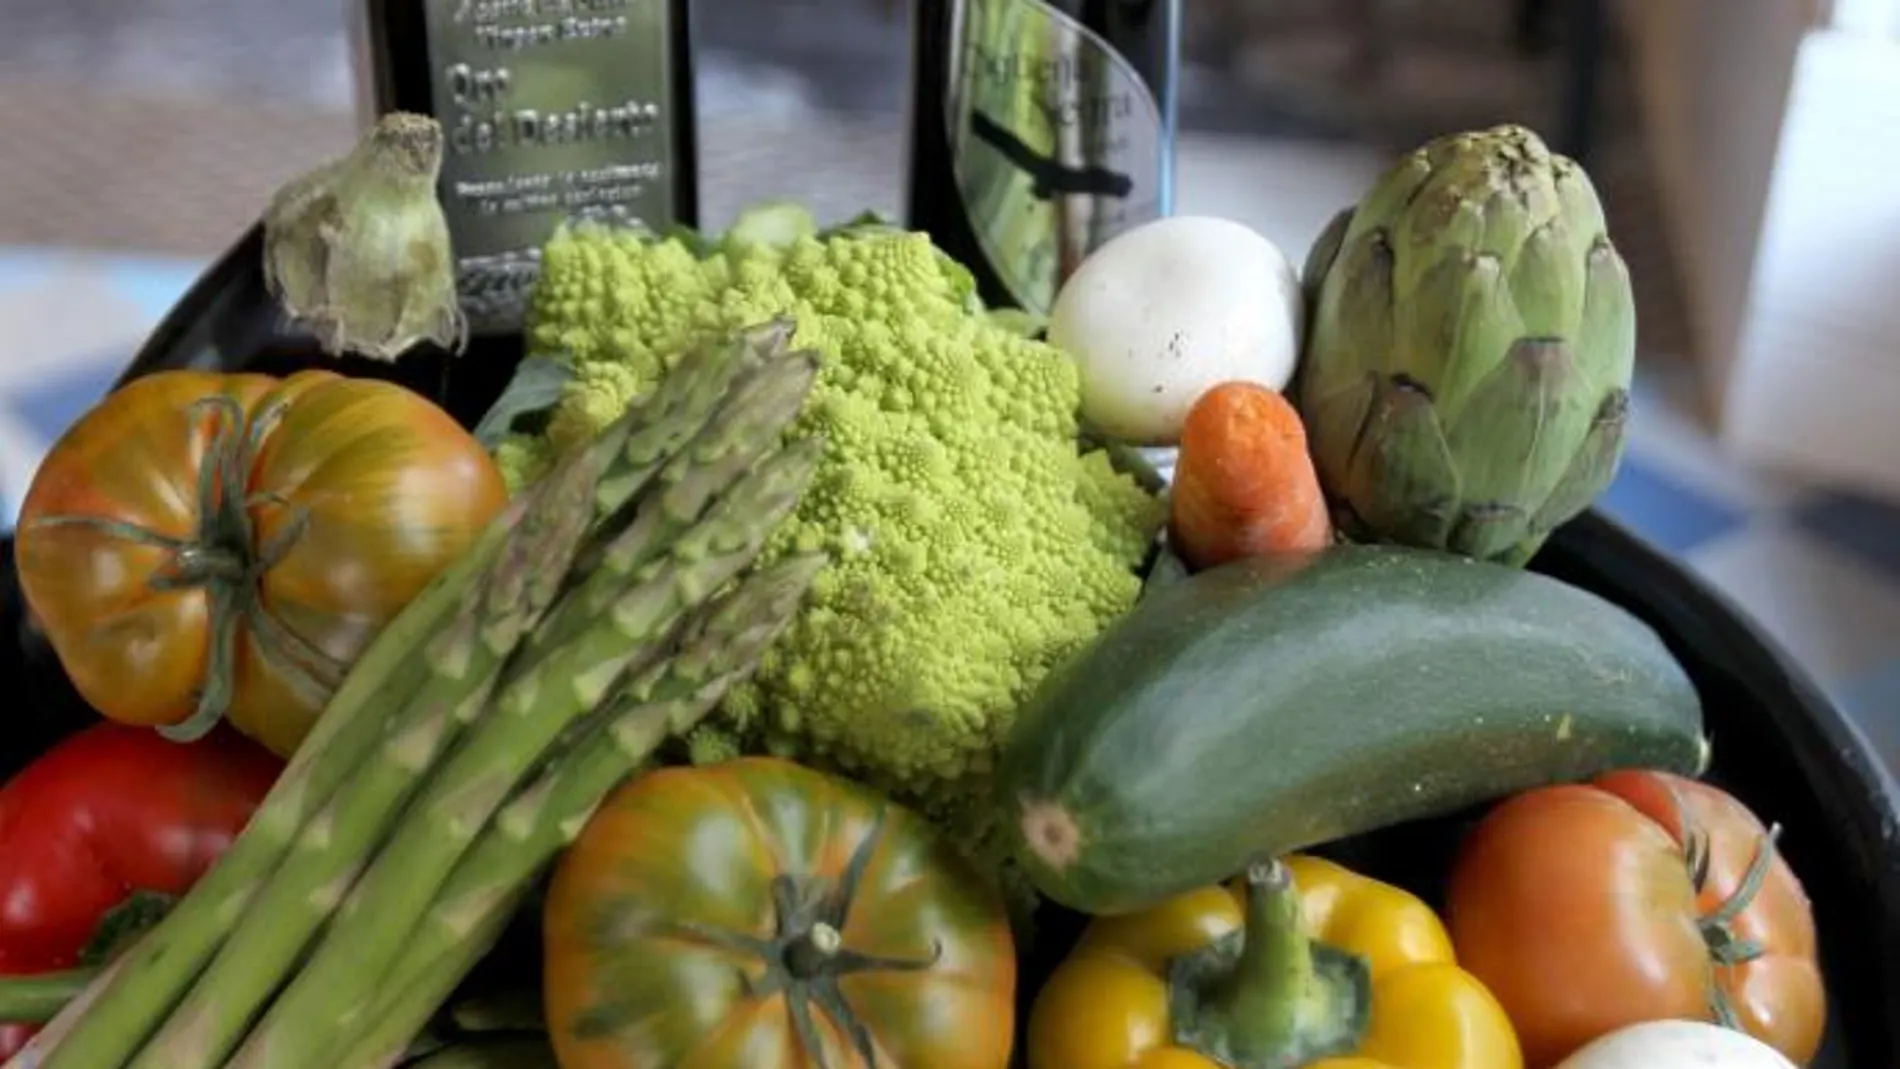 Las verduras fritas en aceite oliva, más propiedades saludables que las cocidas